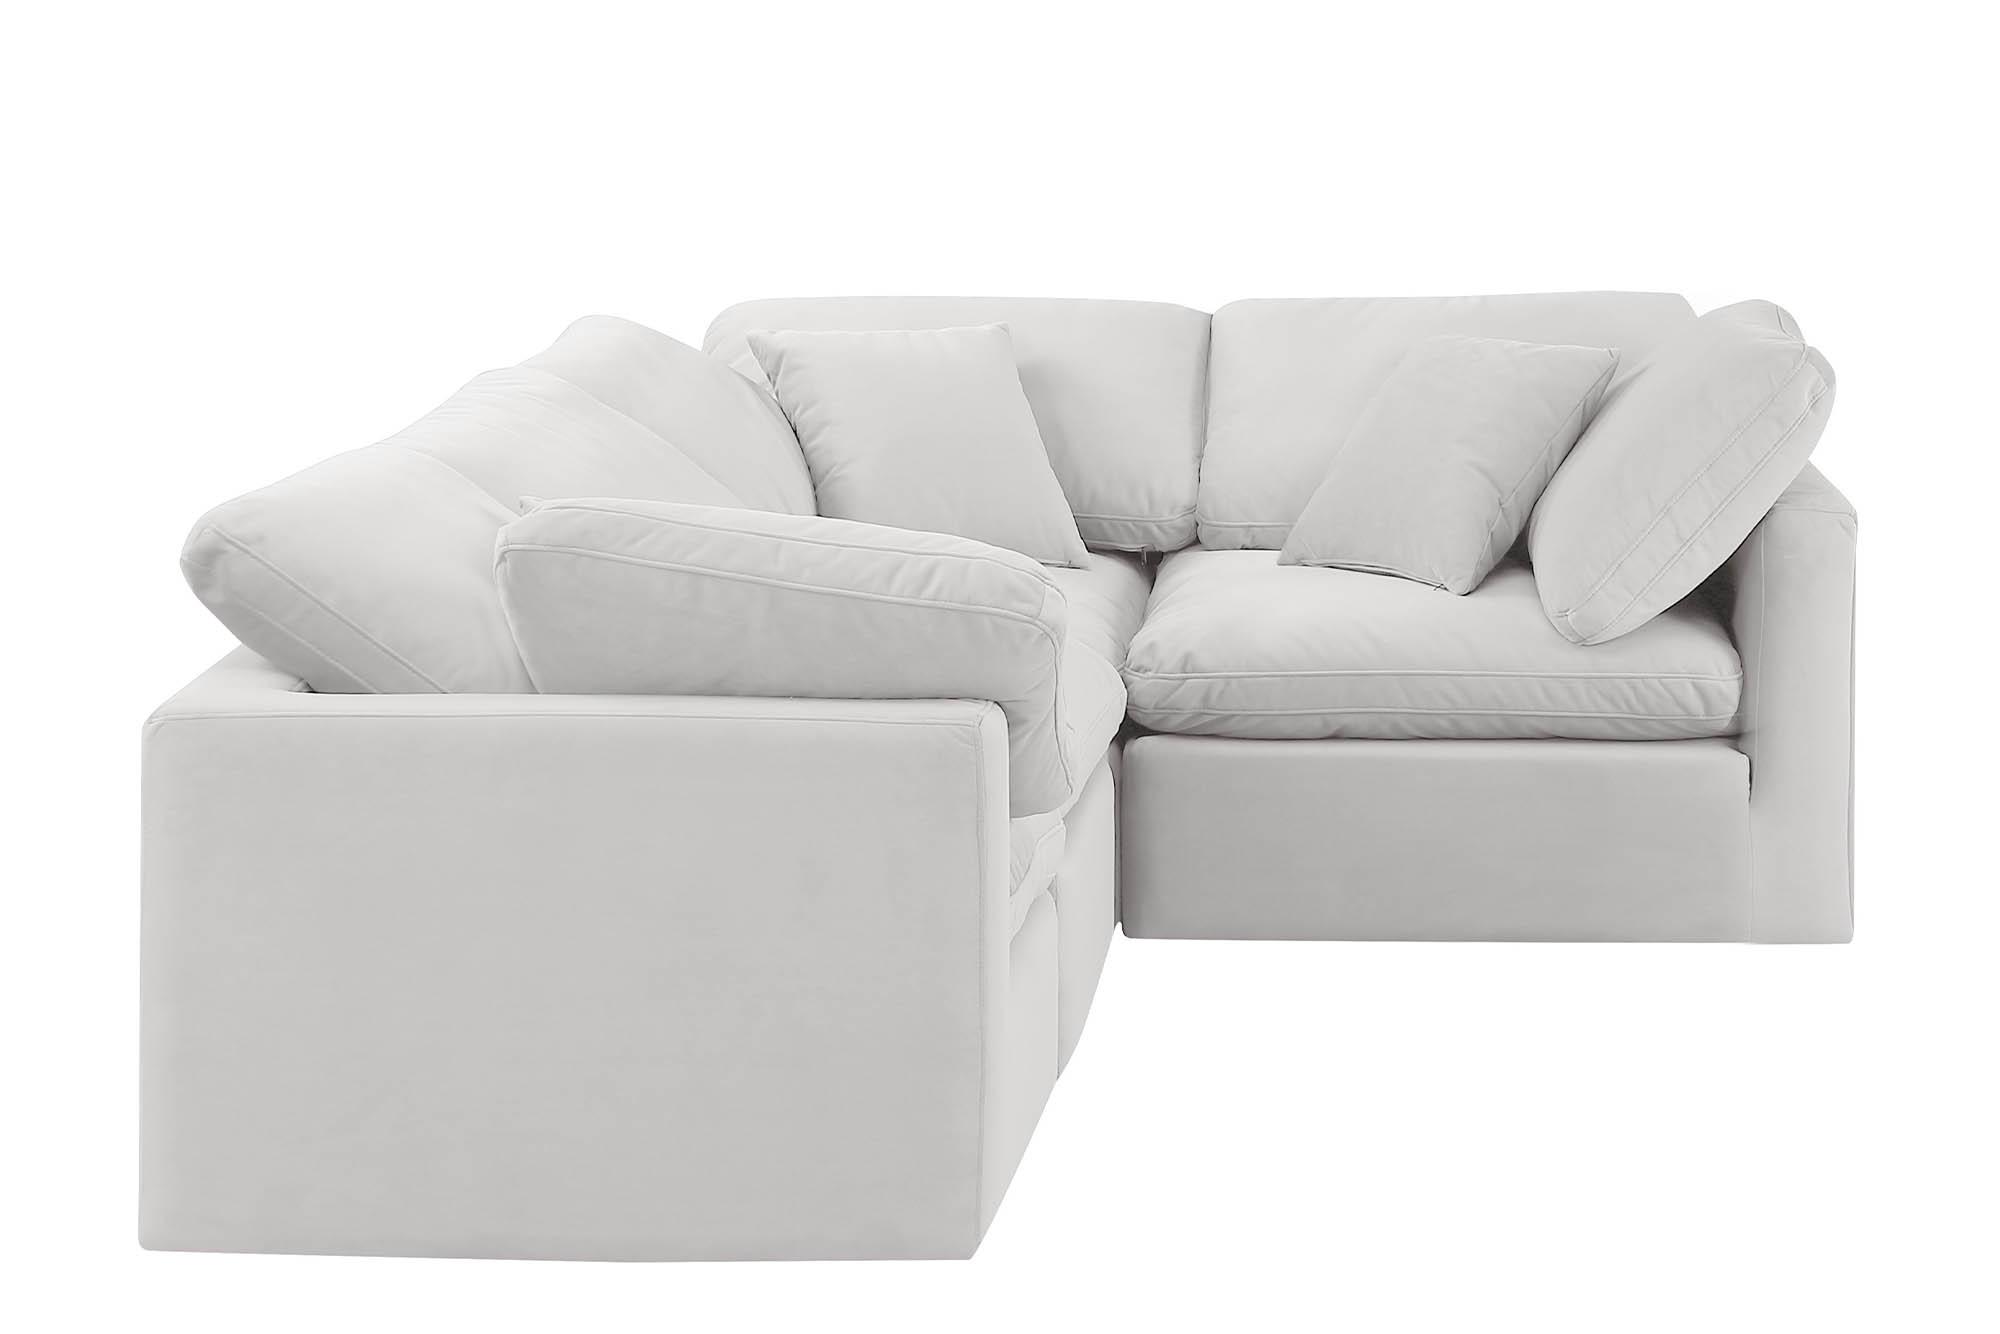 

    
Meridian Furniture INDULGE 147Cream-Sec4C Modular Sectional Sofa Cream 147Cream-Sec4C
